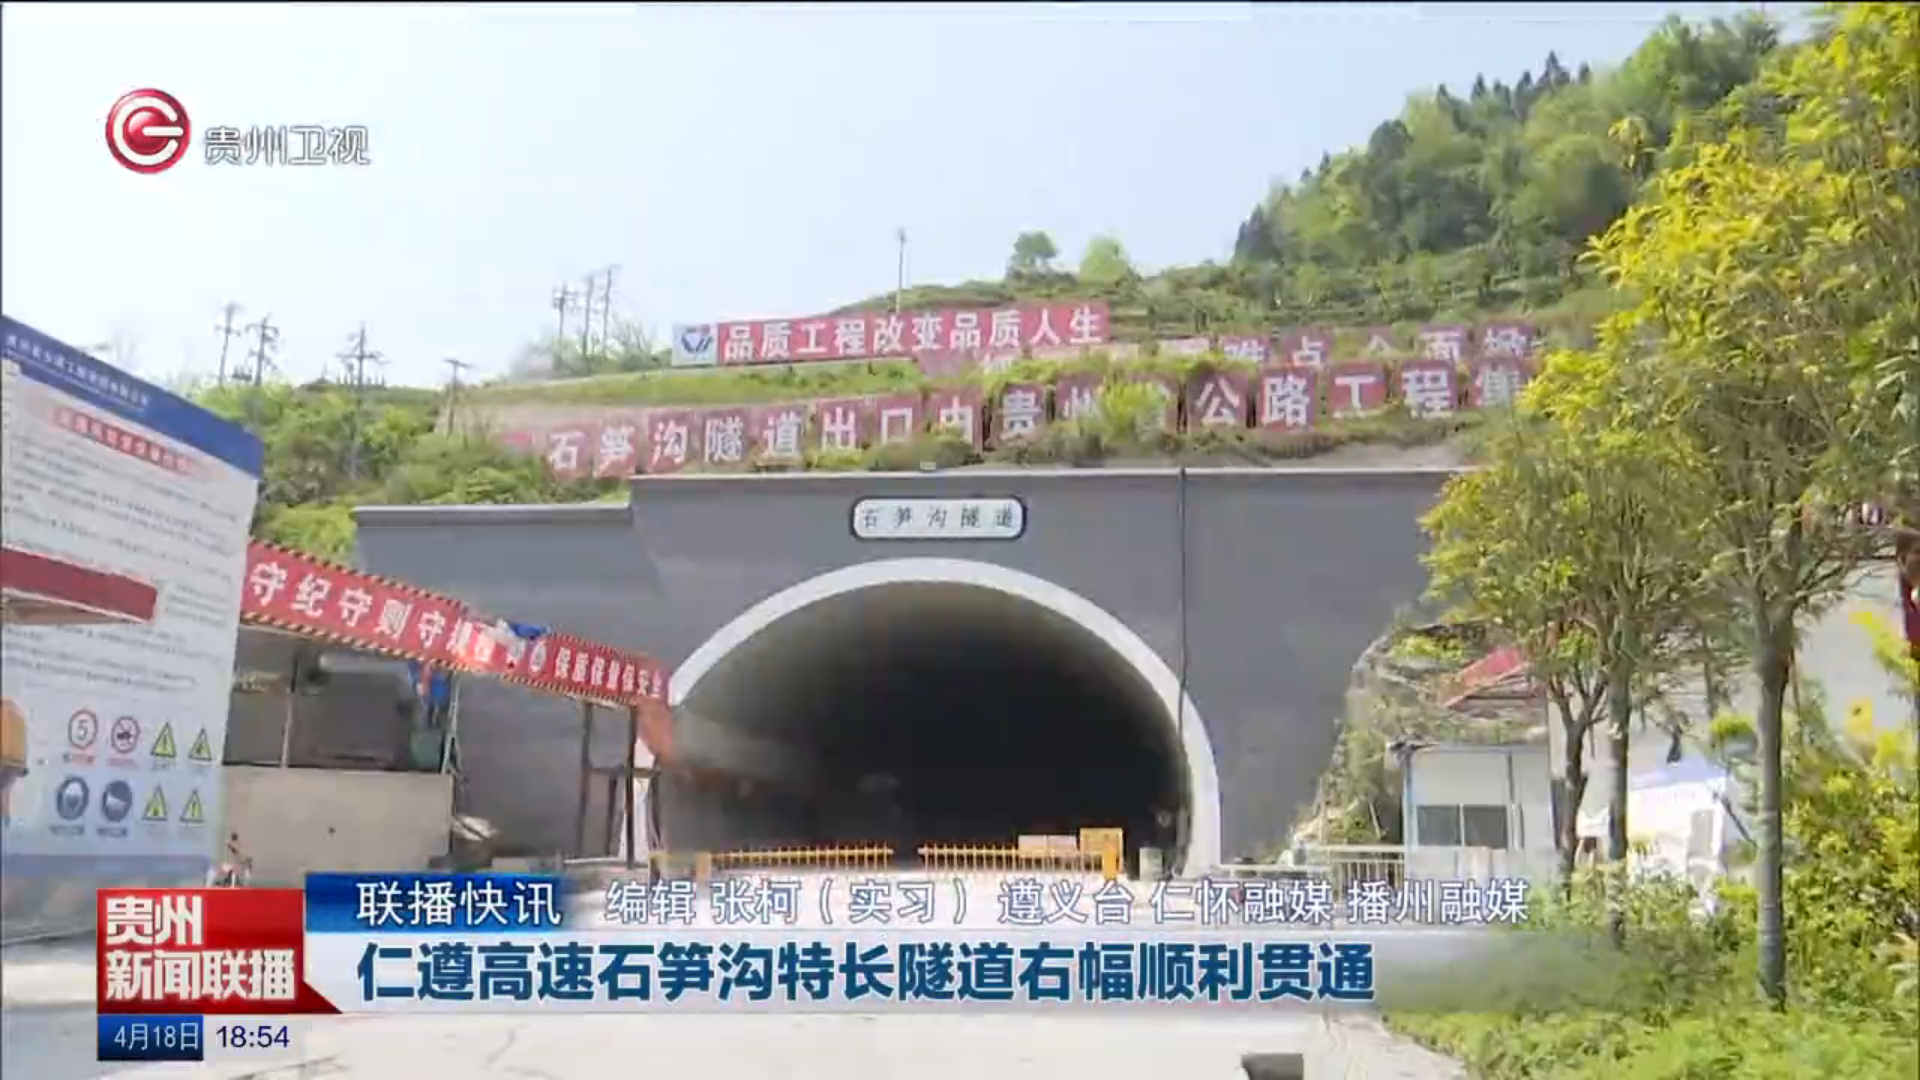 隧道工程 - 贵州省公路工程集团有限公司